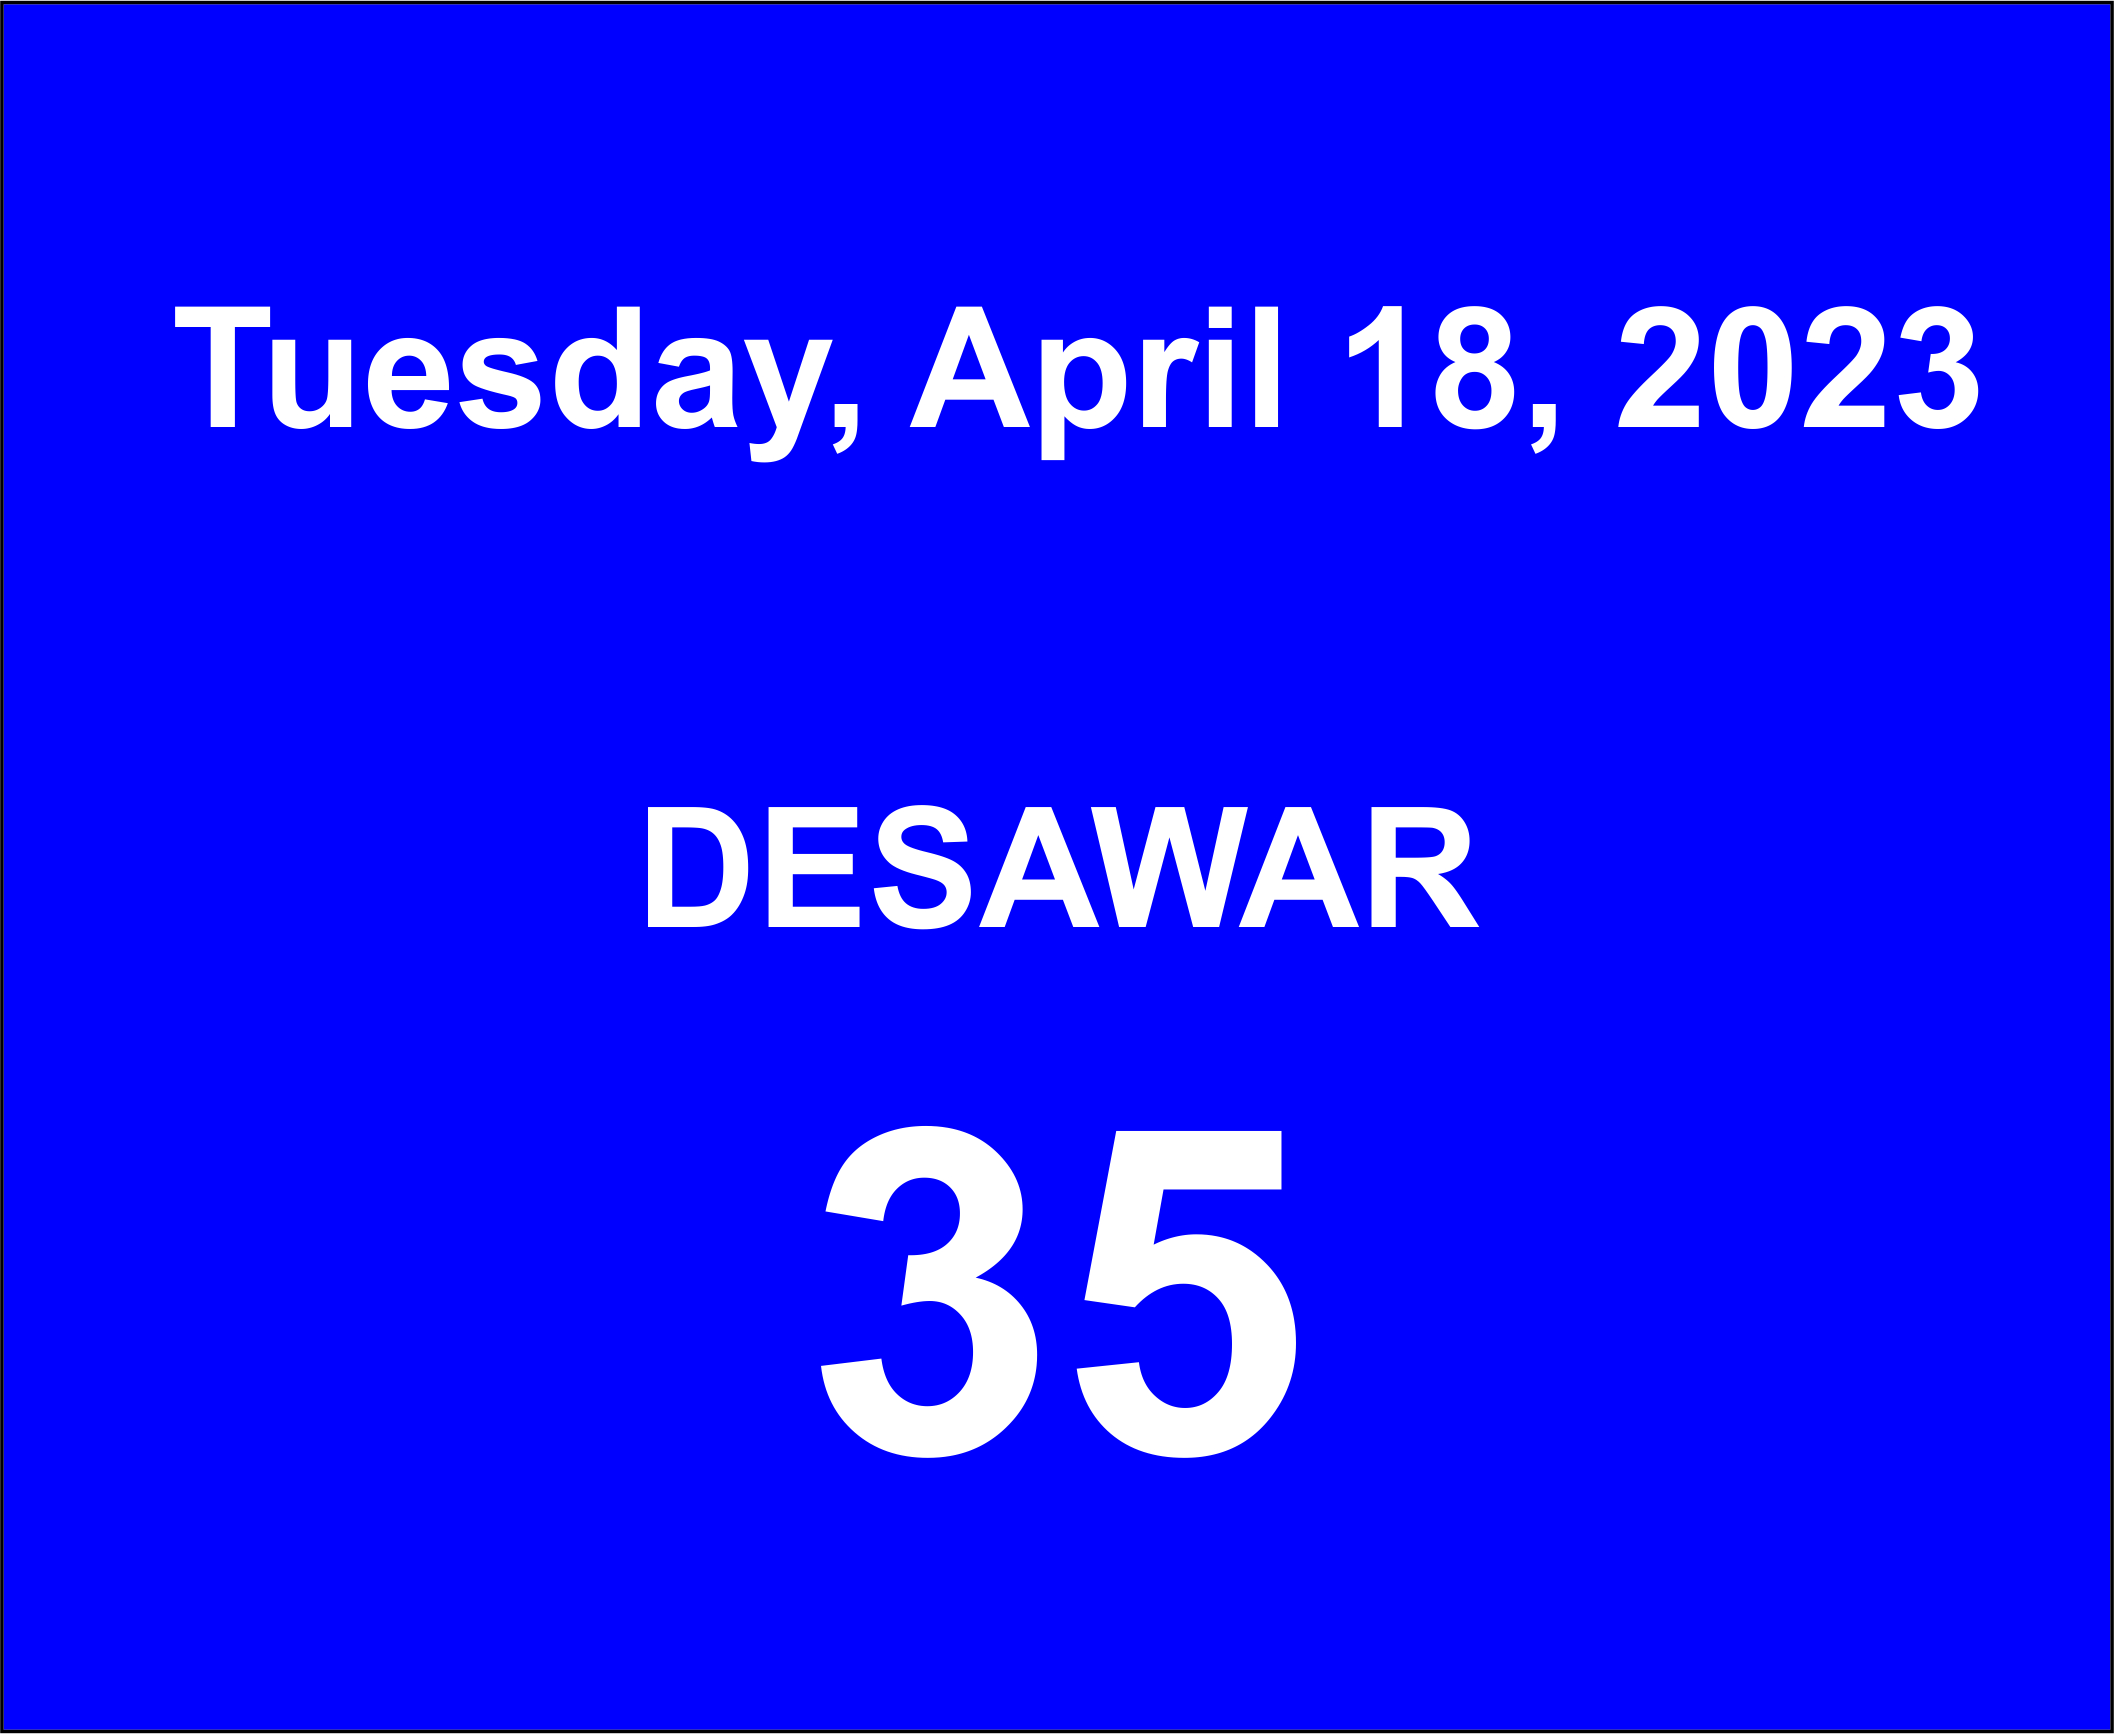 Result Disawar Tuesday April -18 2023